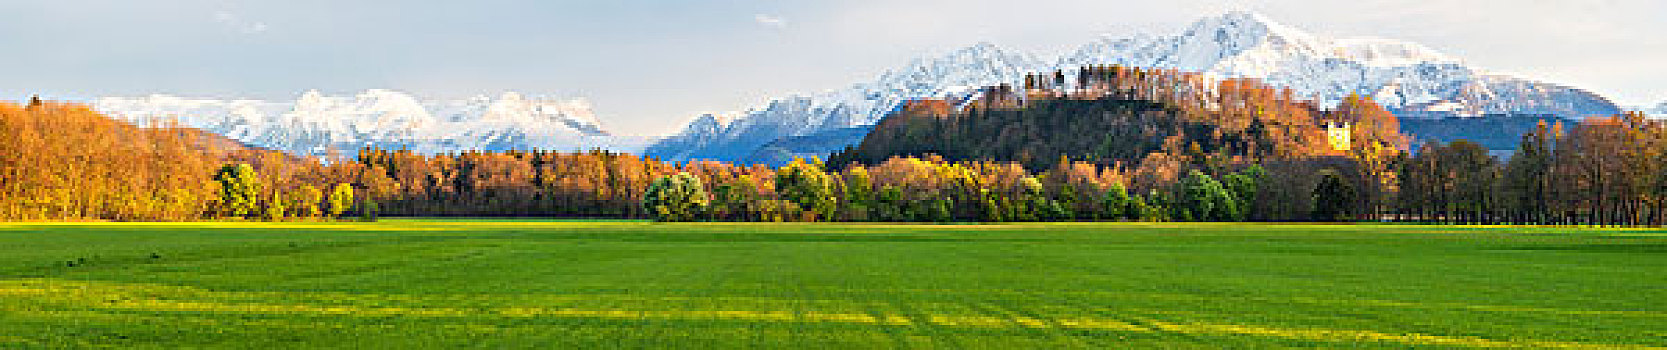 绿色,草地,正面,积雪,贝希特斯加登阿尔卑斯山,萨尔茨堡,奥地利